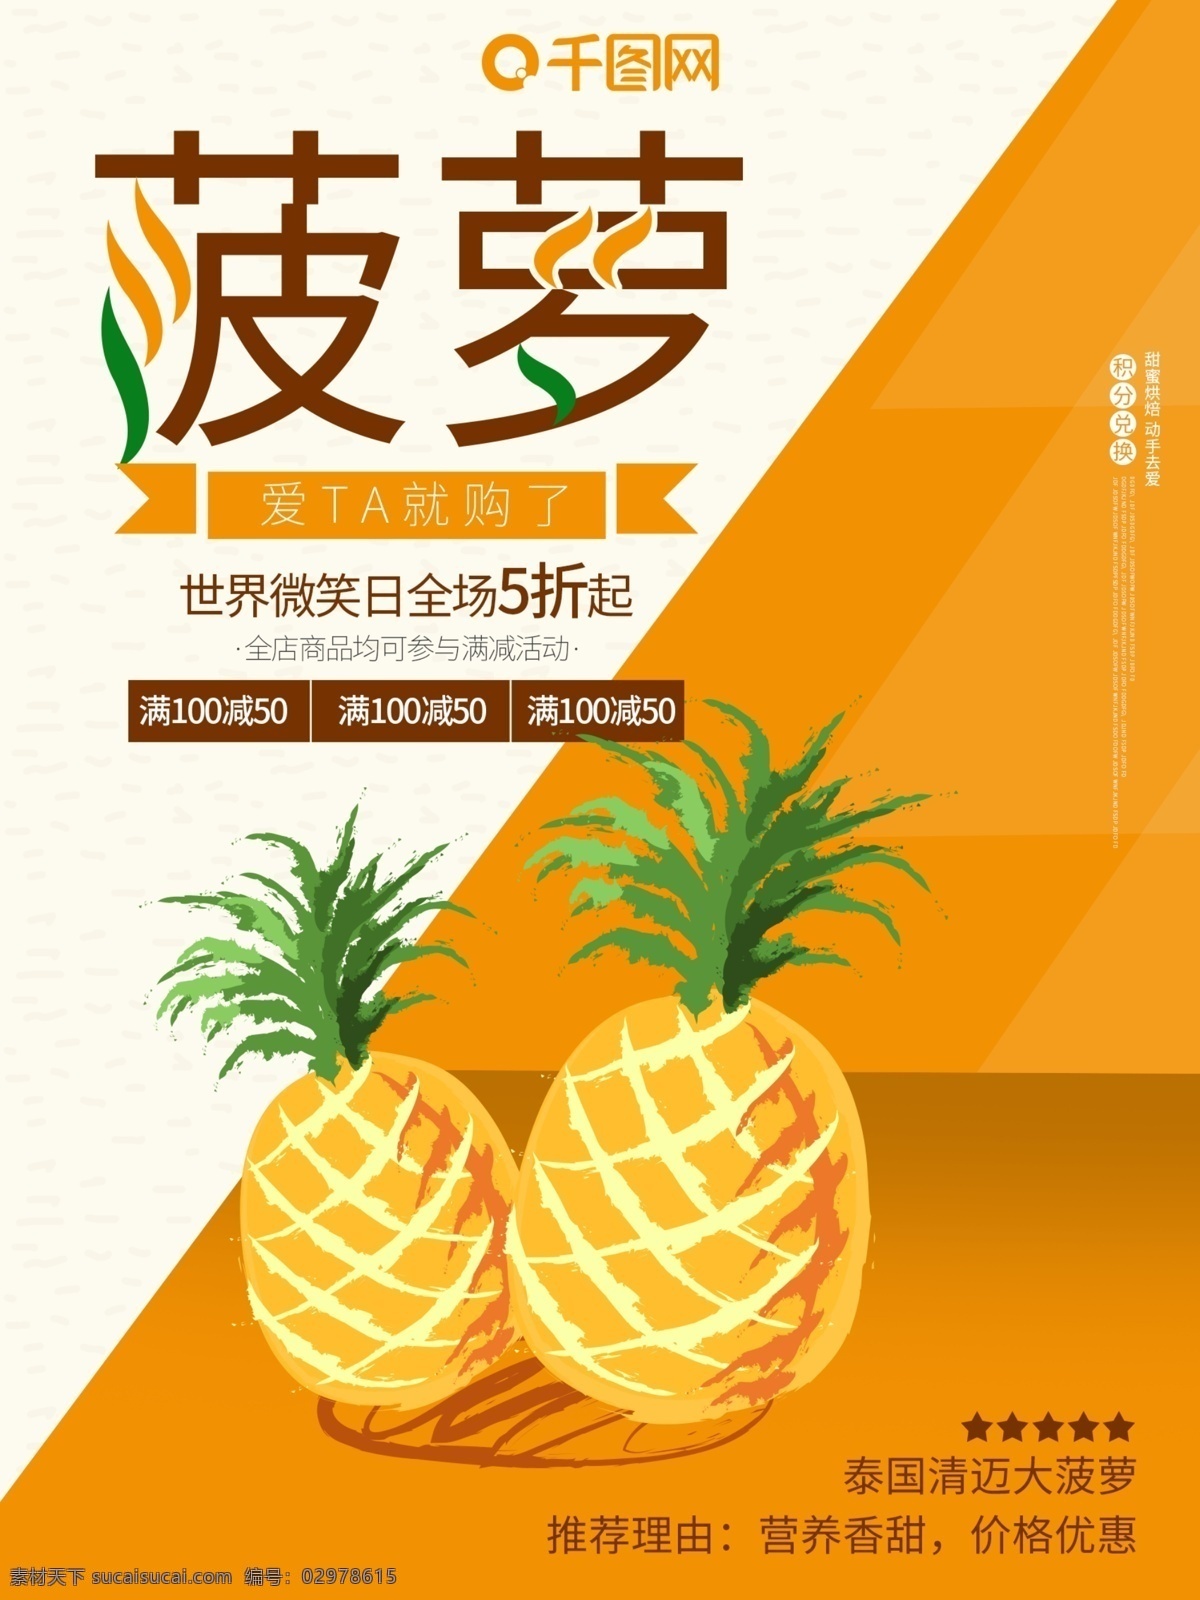 菠萝 美食 水果 橙色 橙子 促销 夏天 果汁 海报